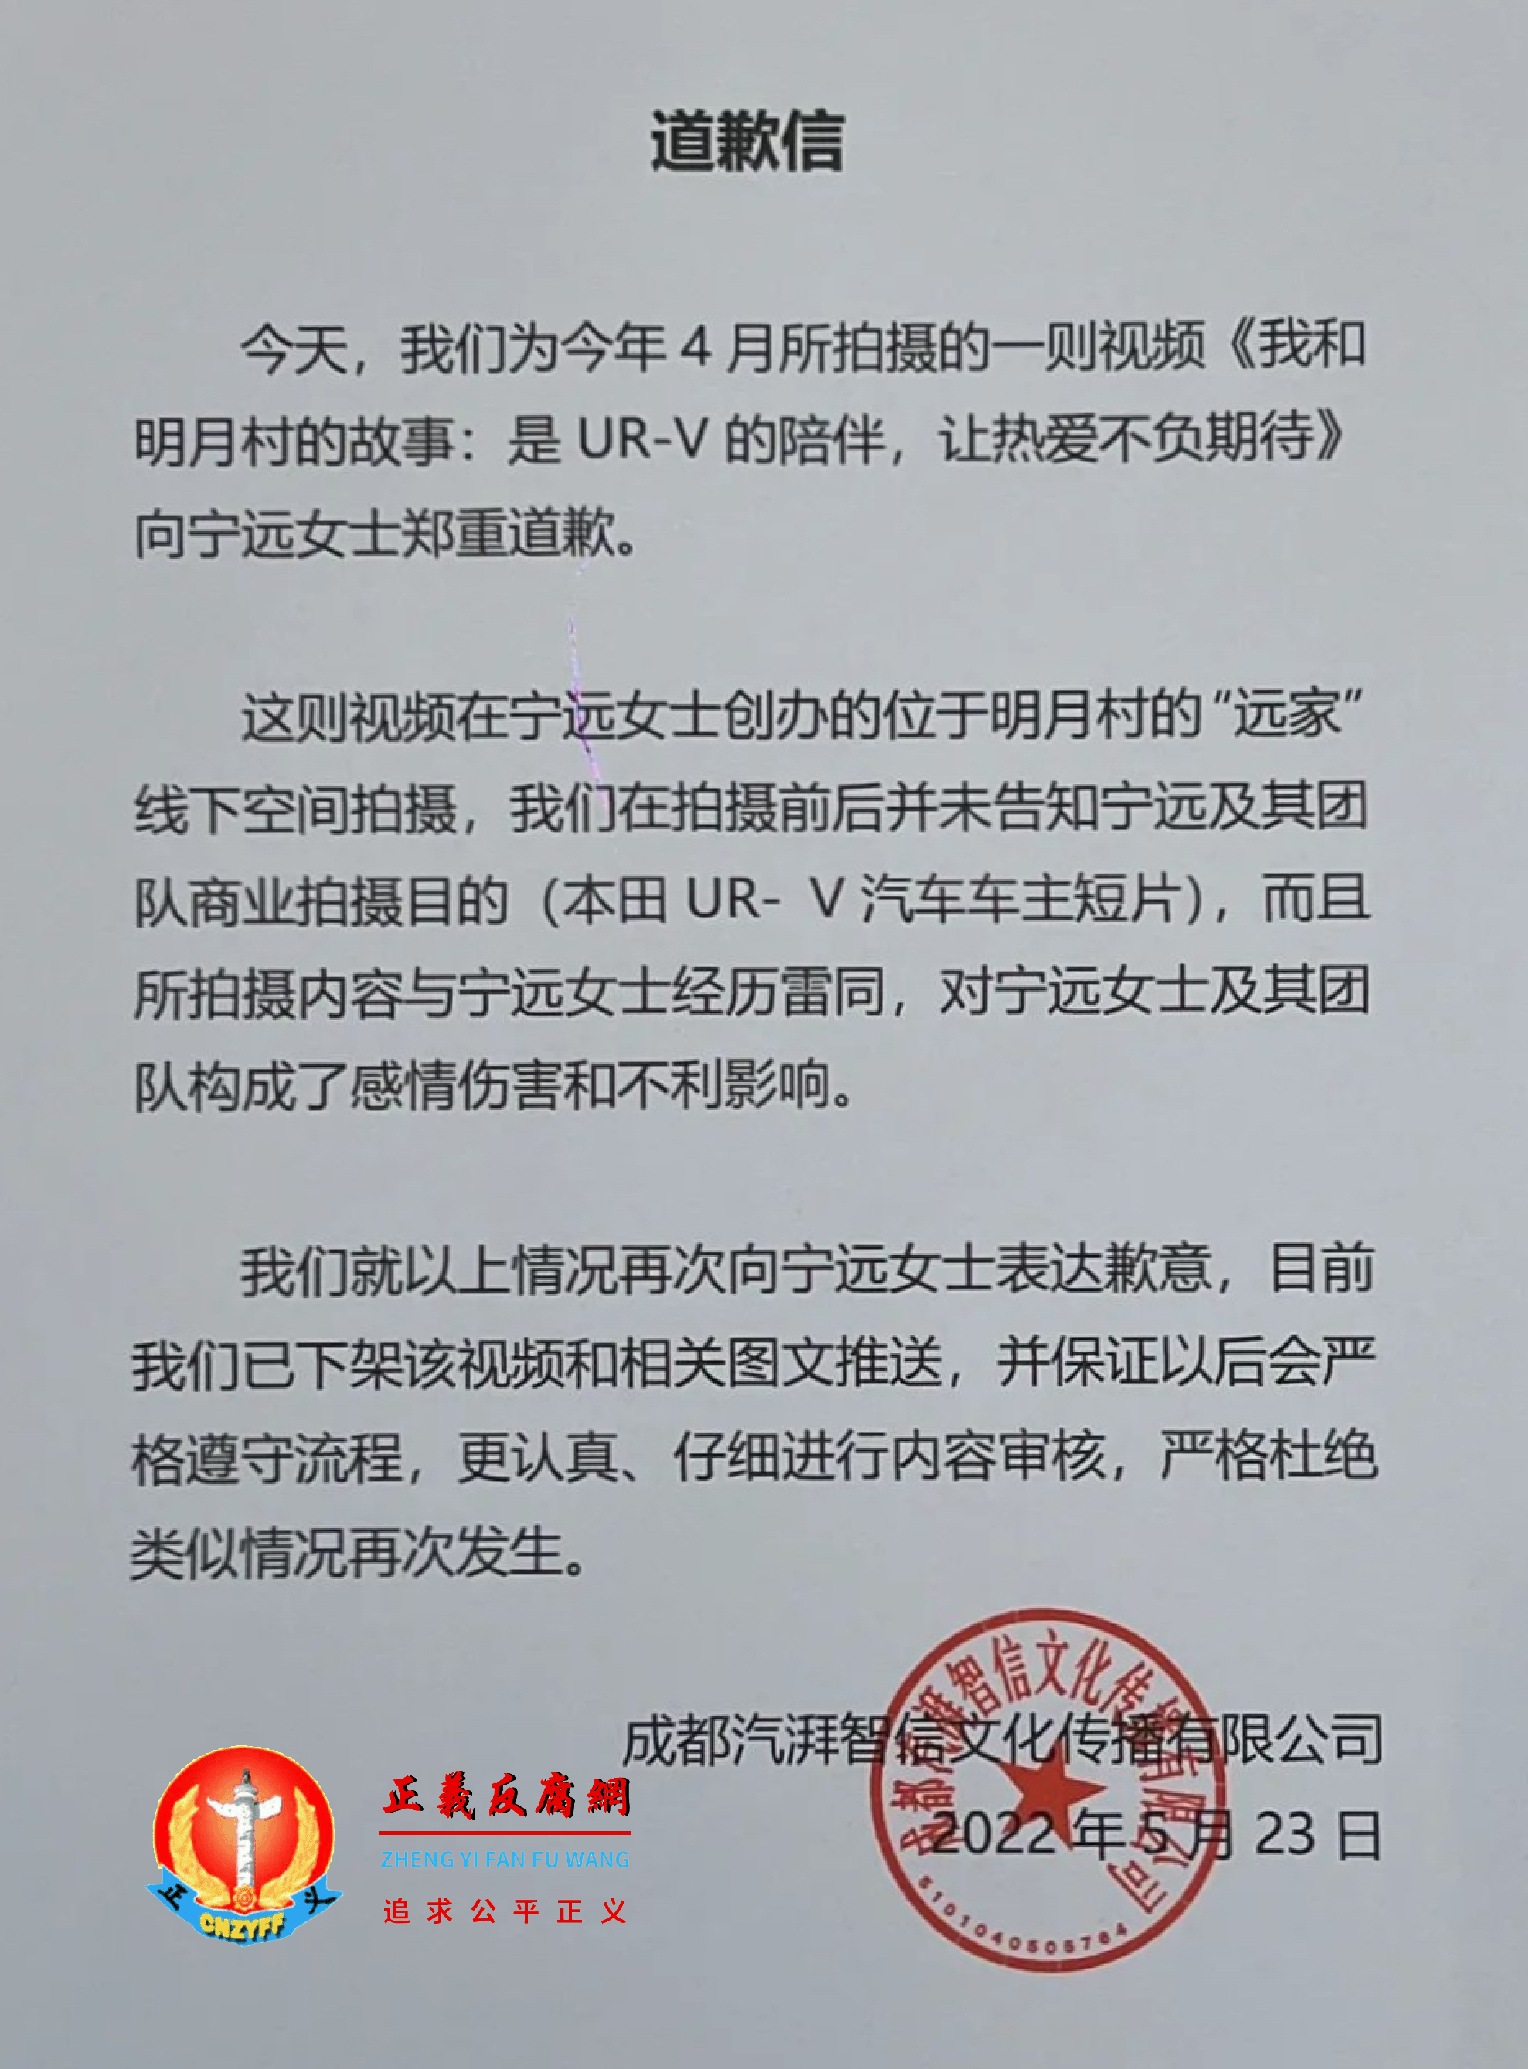 5月23日，成都汽湃智信文化传播有限公司发布公开《道歉信》。.png